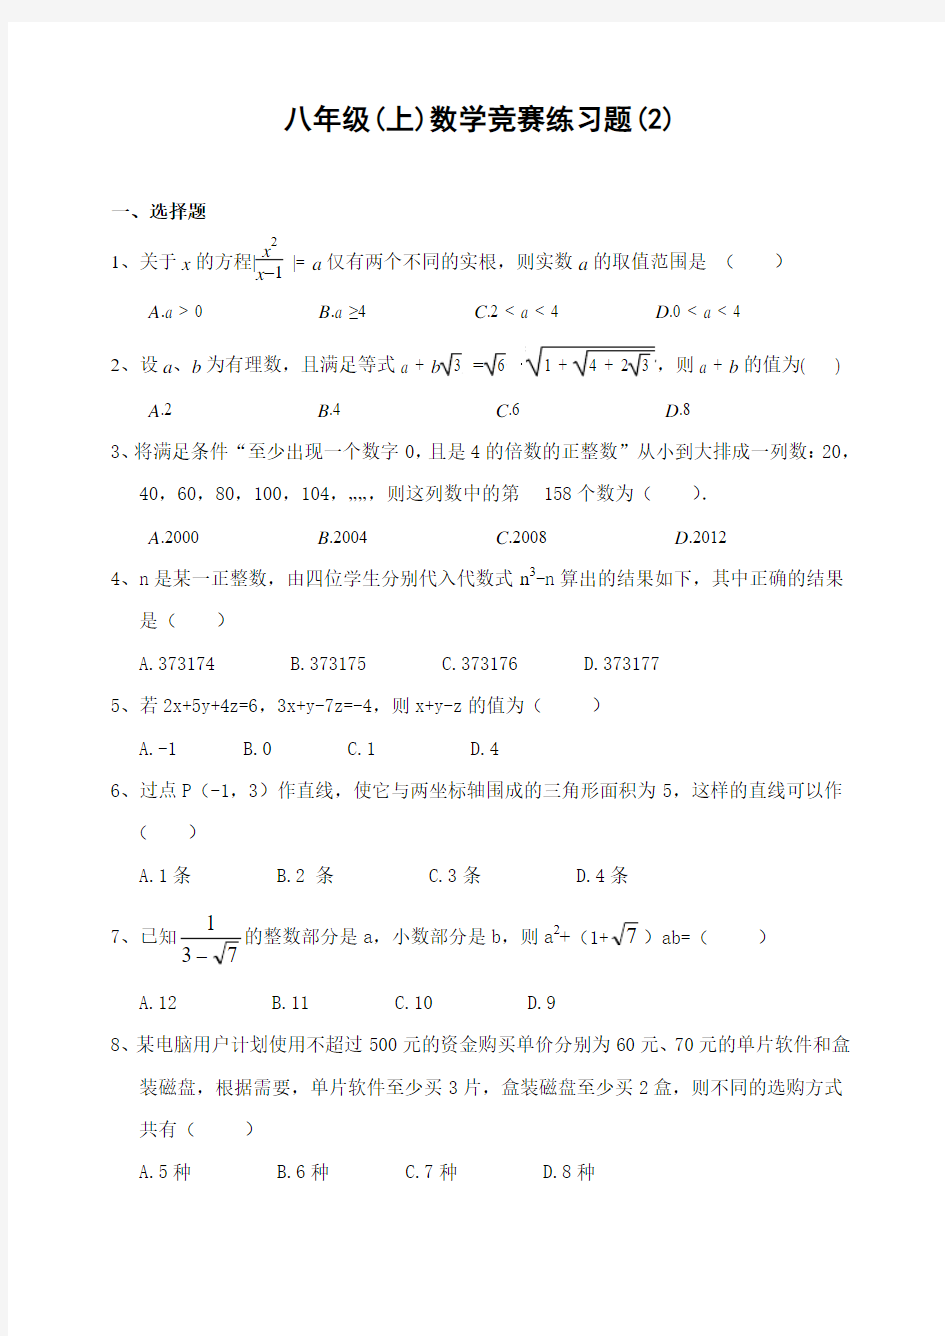 八年级(上)数学竞赛练习题(2)(含答案) (1)